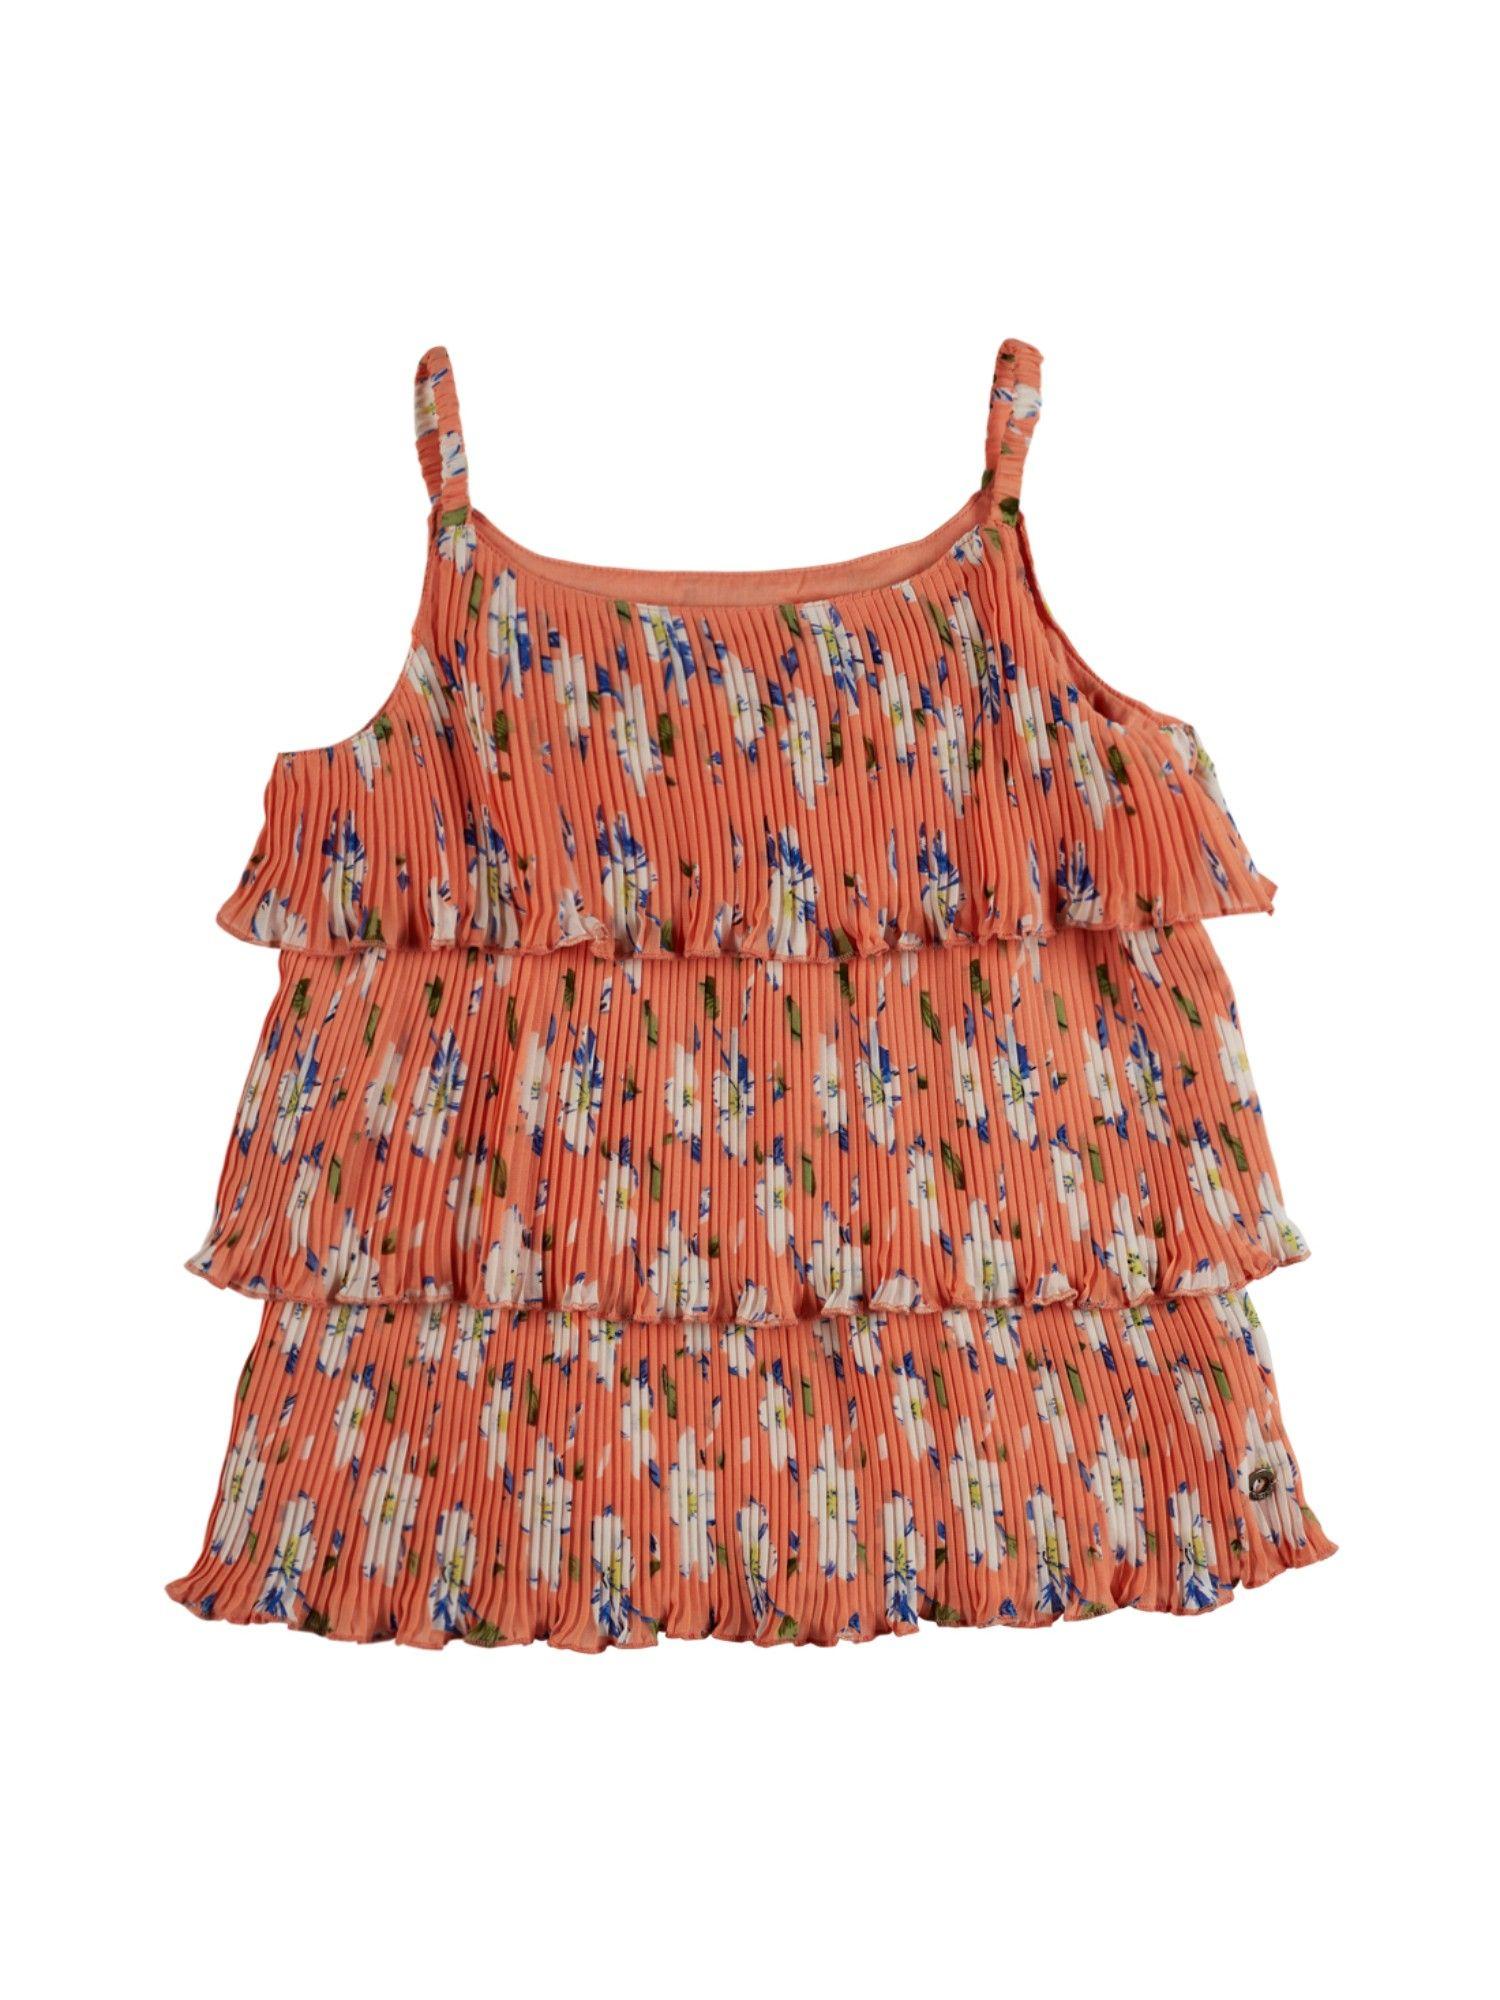 Girls Orange Floral Print Top Full Sleeves